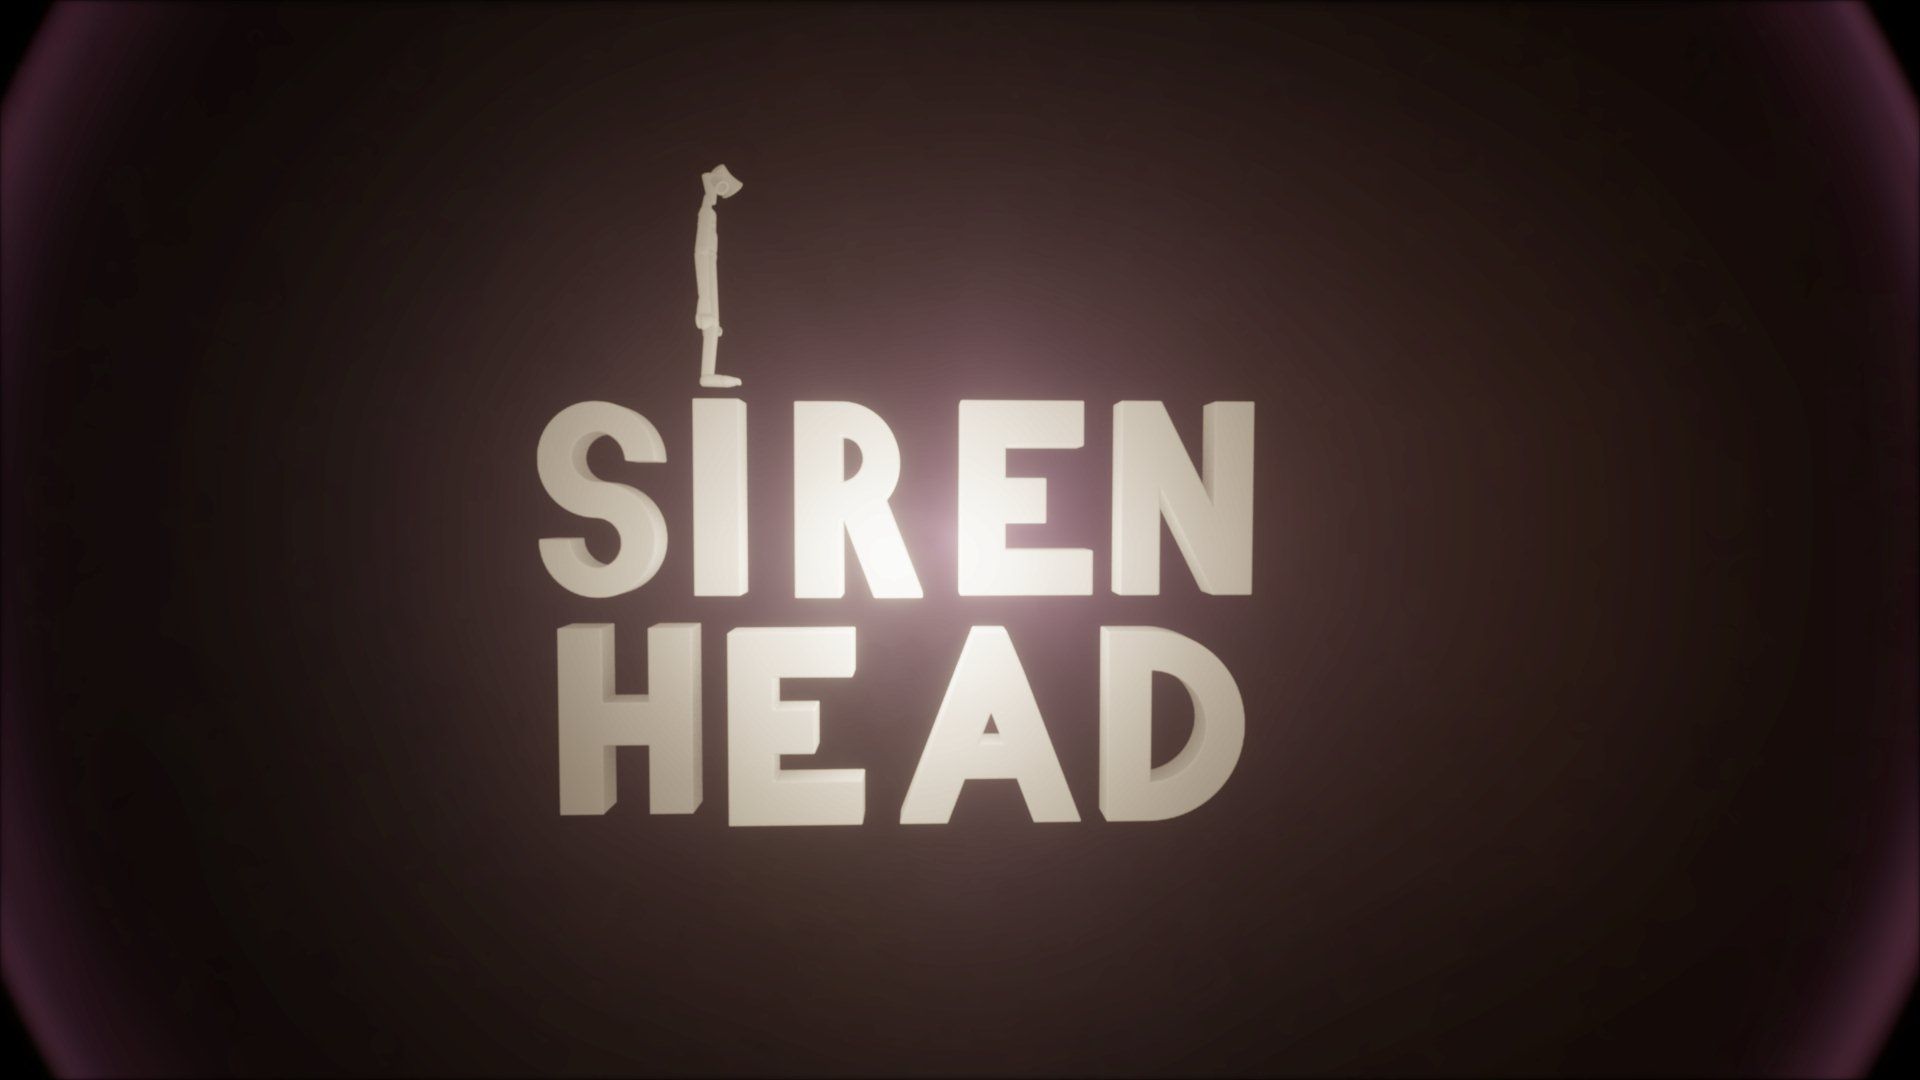 Siren Head minigame inspired by Trevor Henderson's creation